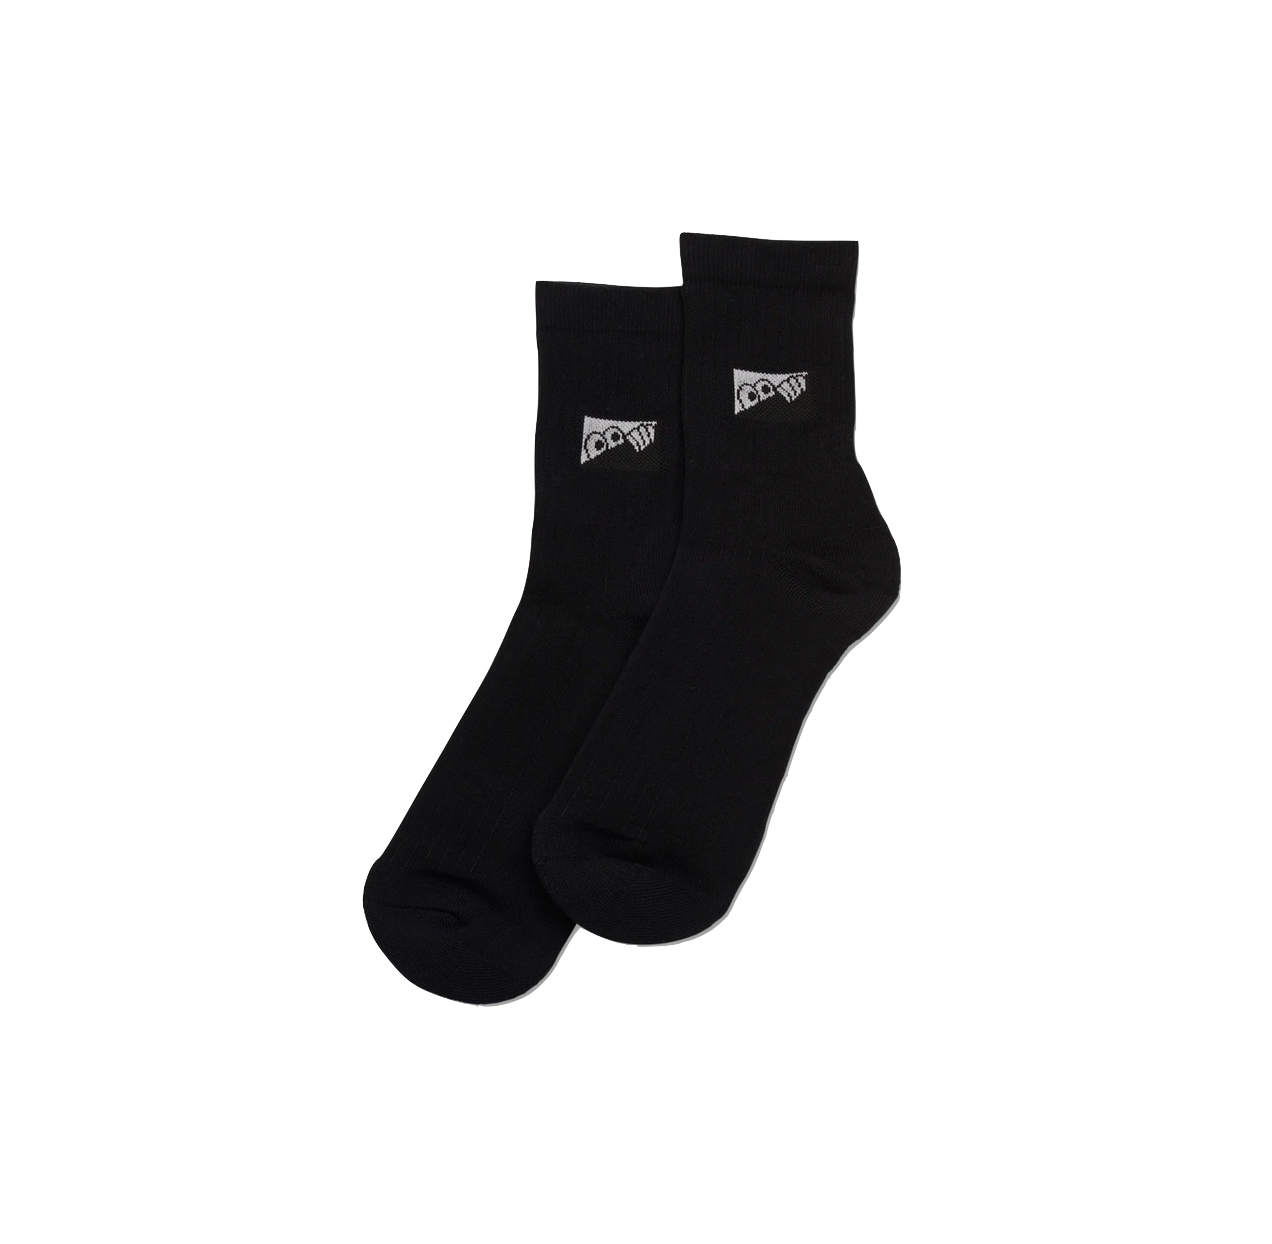 Last Resort AB socks Heel Tab Dress Socks black